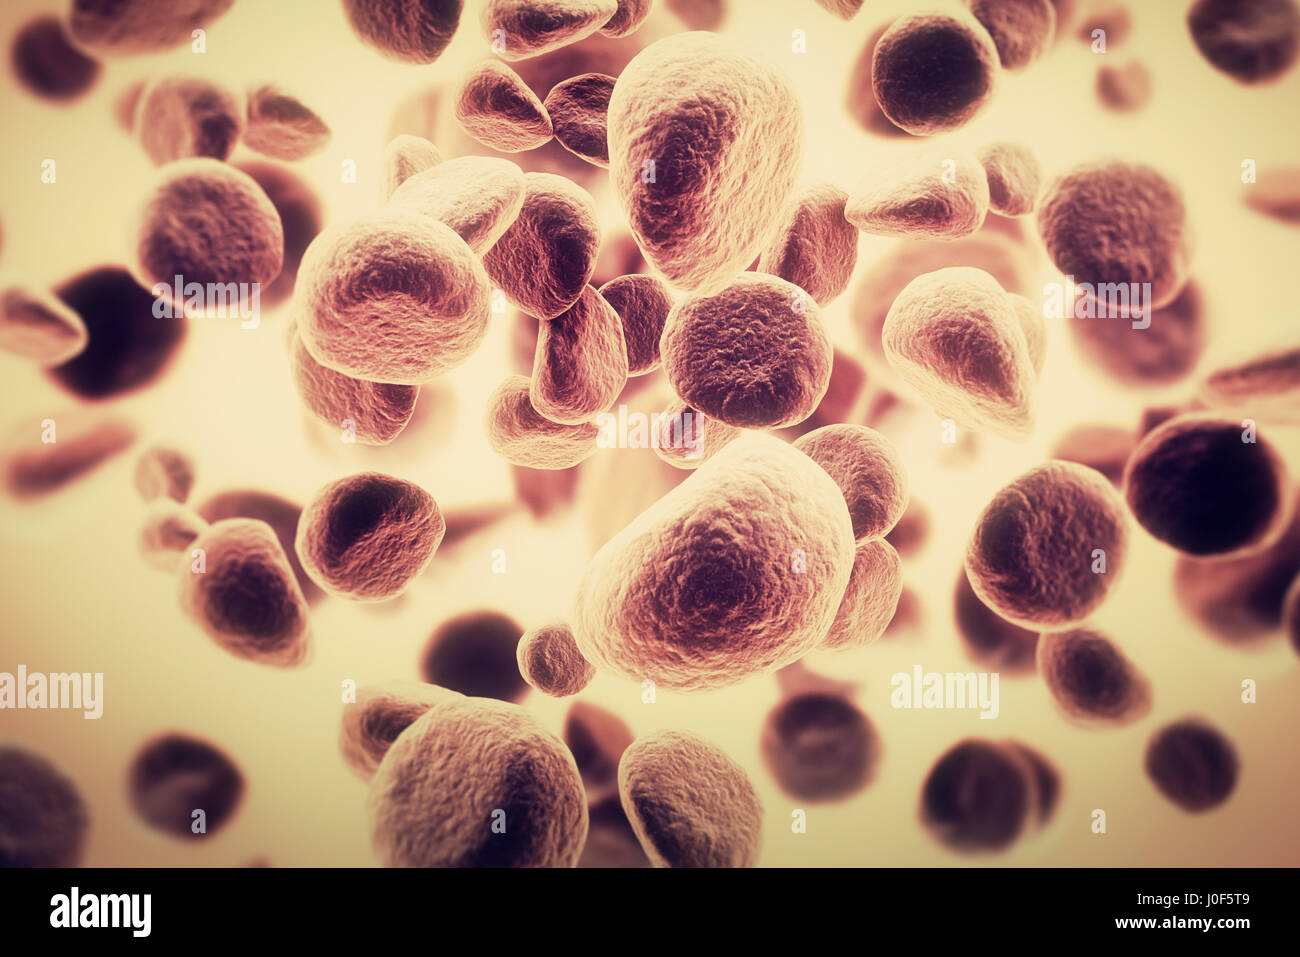 La diffusione delle cellule tumorali e la crescita di cellule maligne in un corpo umano Foto Stock